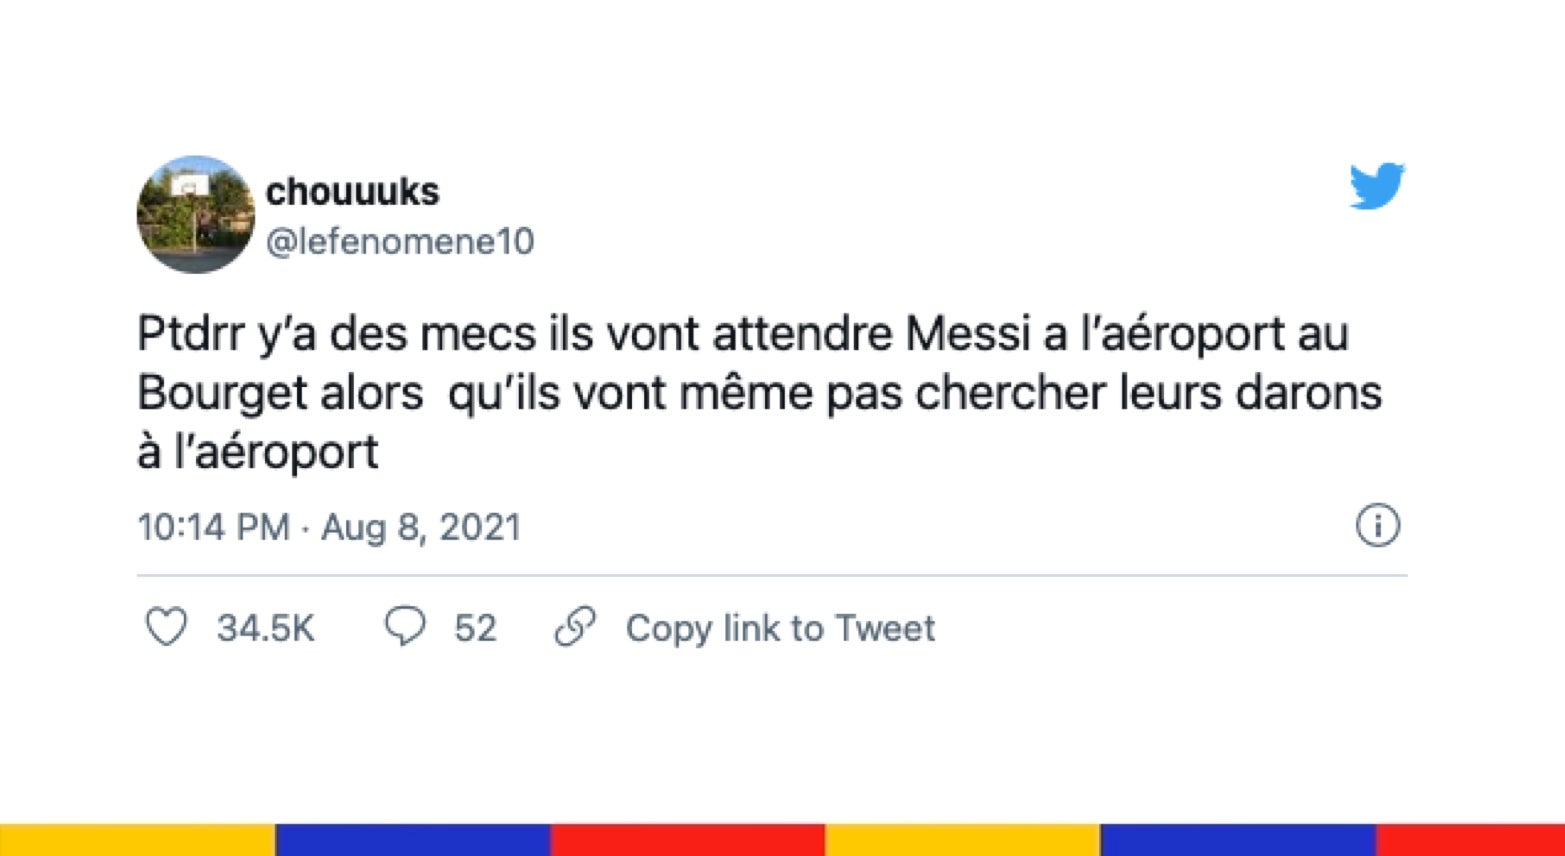 Le grand n'importe quoi des réseaux sociaux : Messi n'est pas (encore) arrivé au Bourget